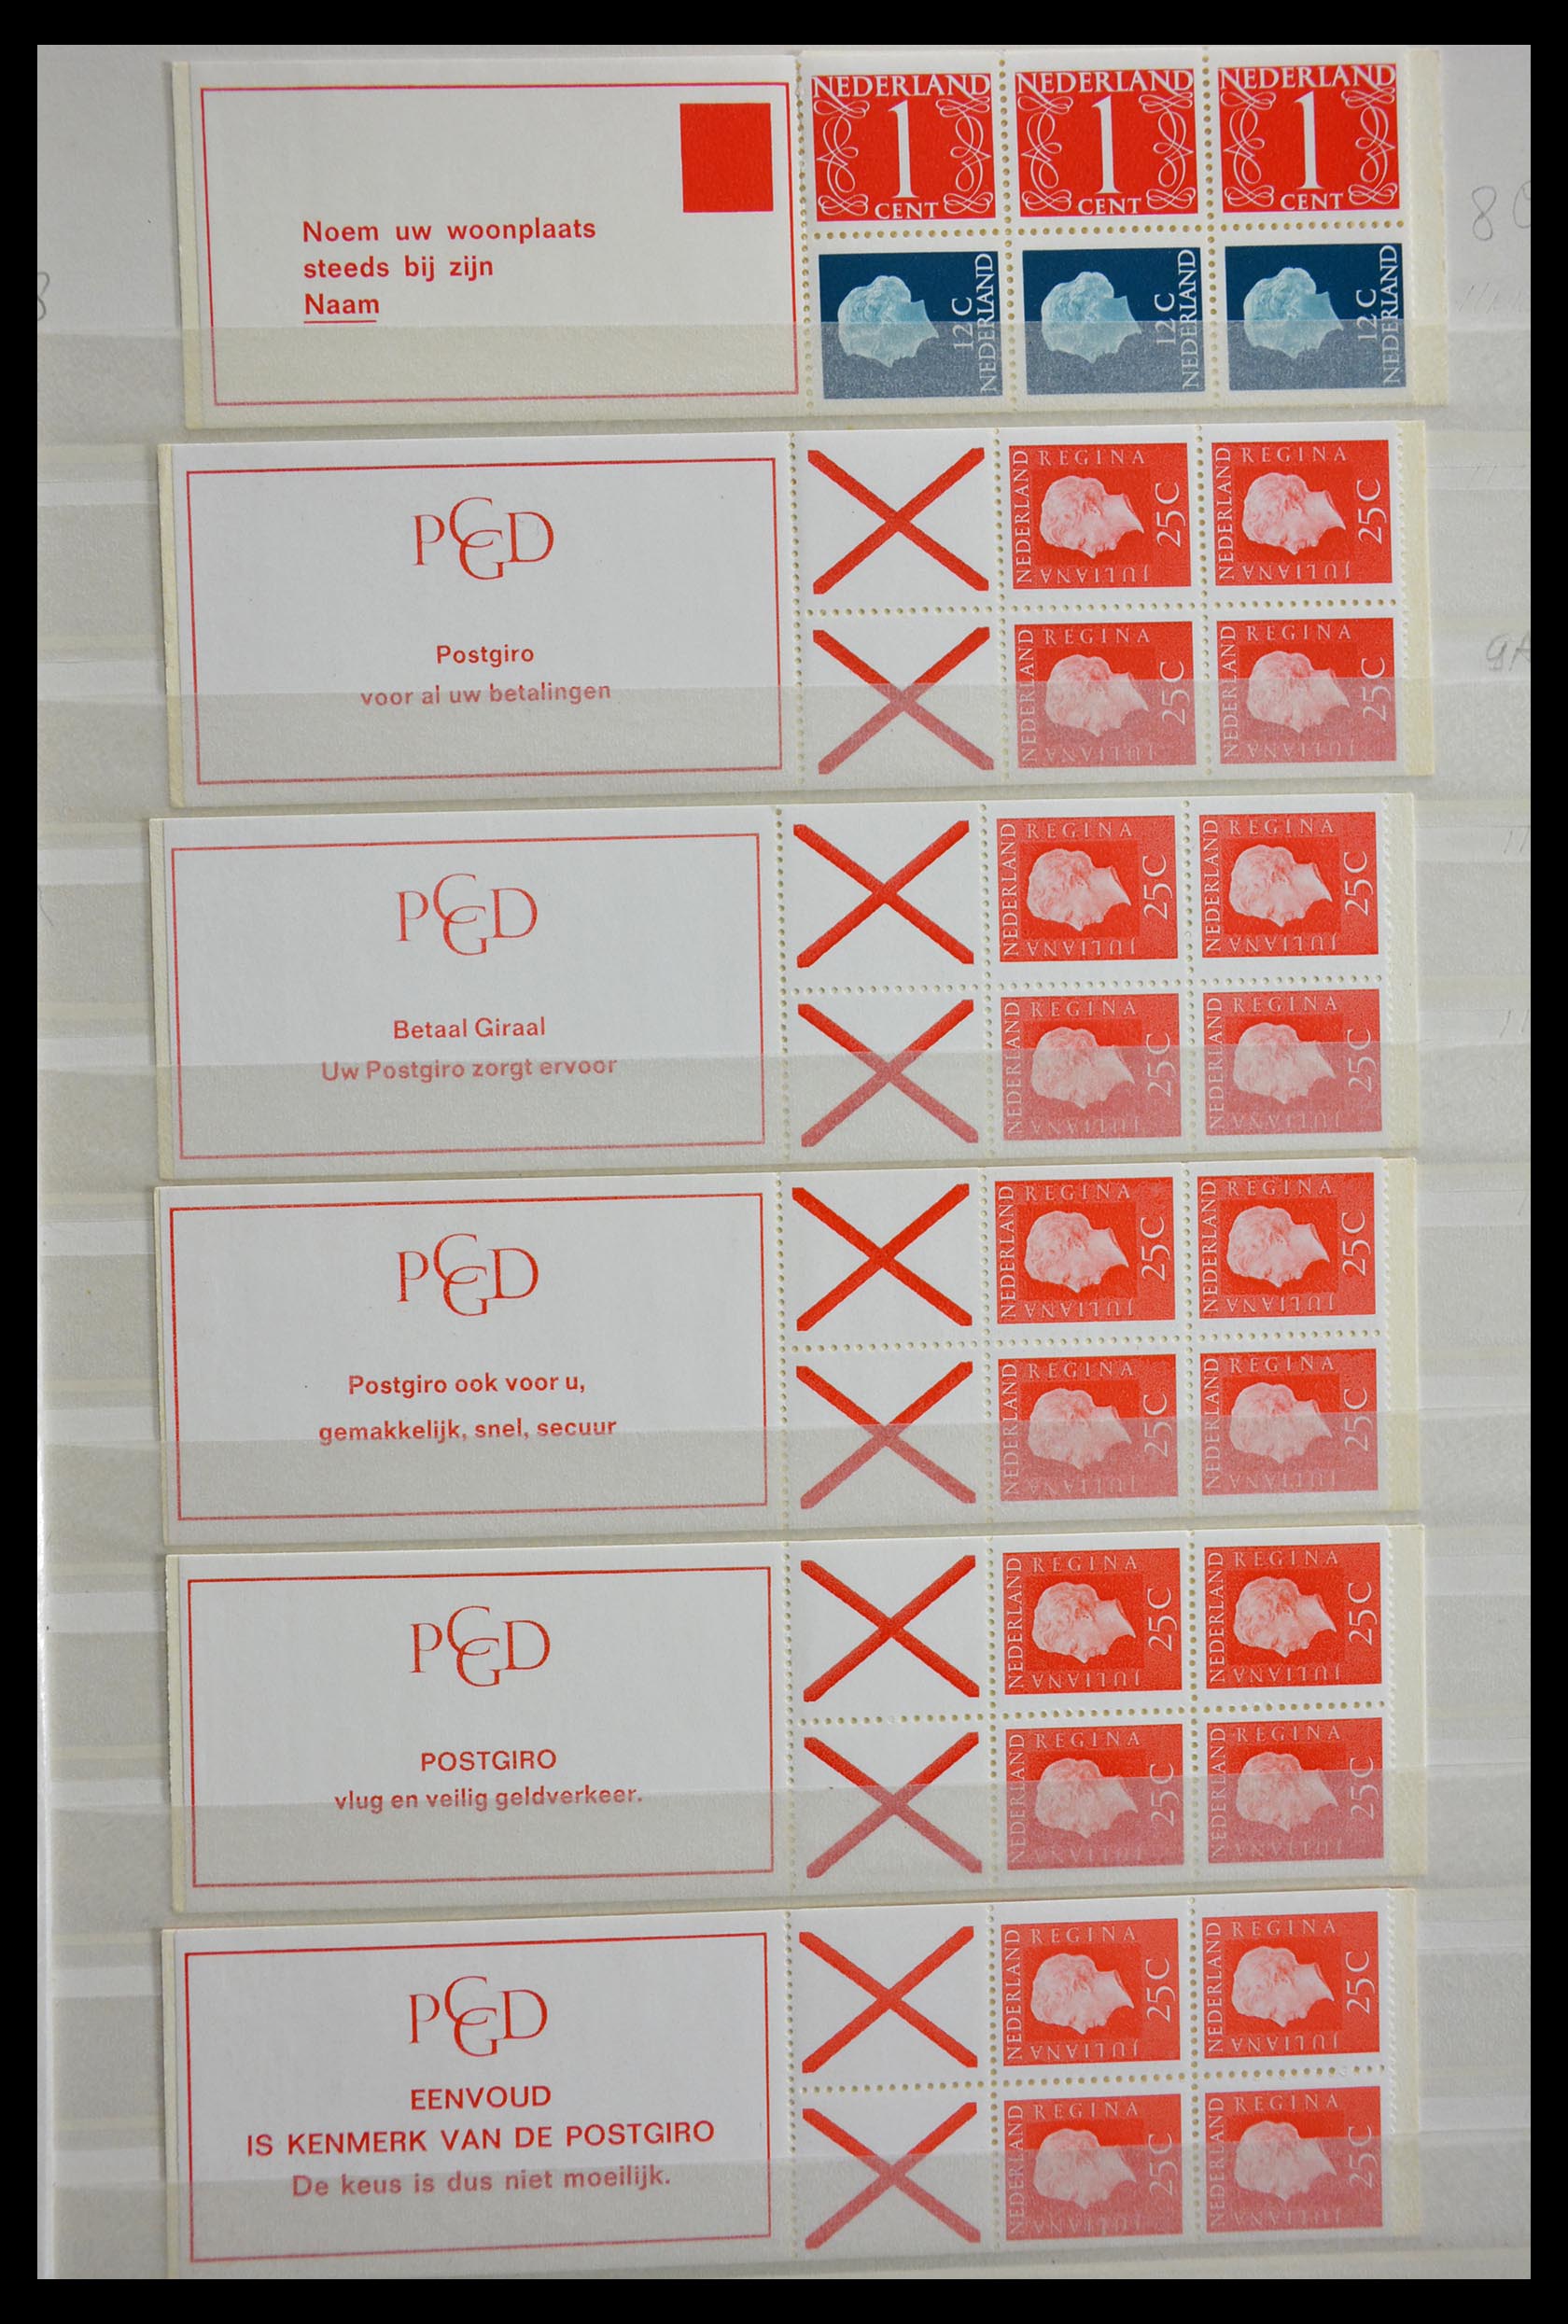 29387 005 - 29387 Netherlands stamp booklets 1964-2014.